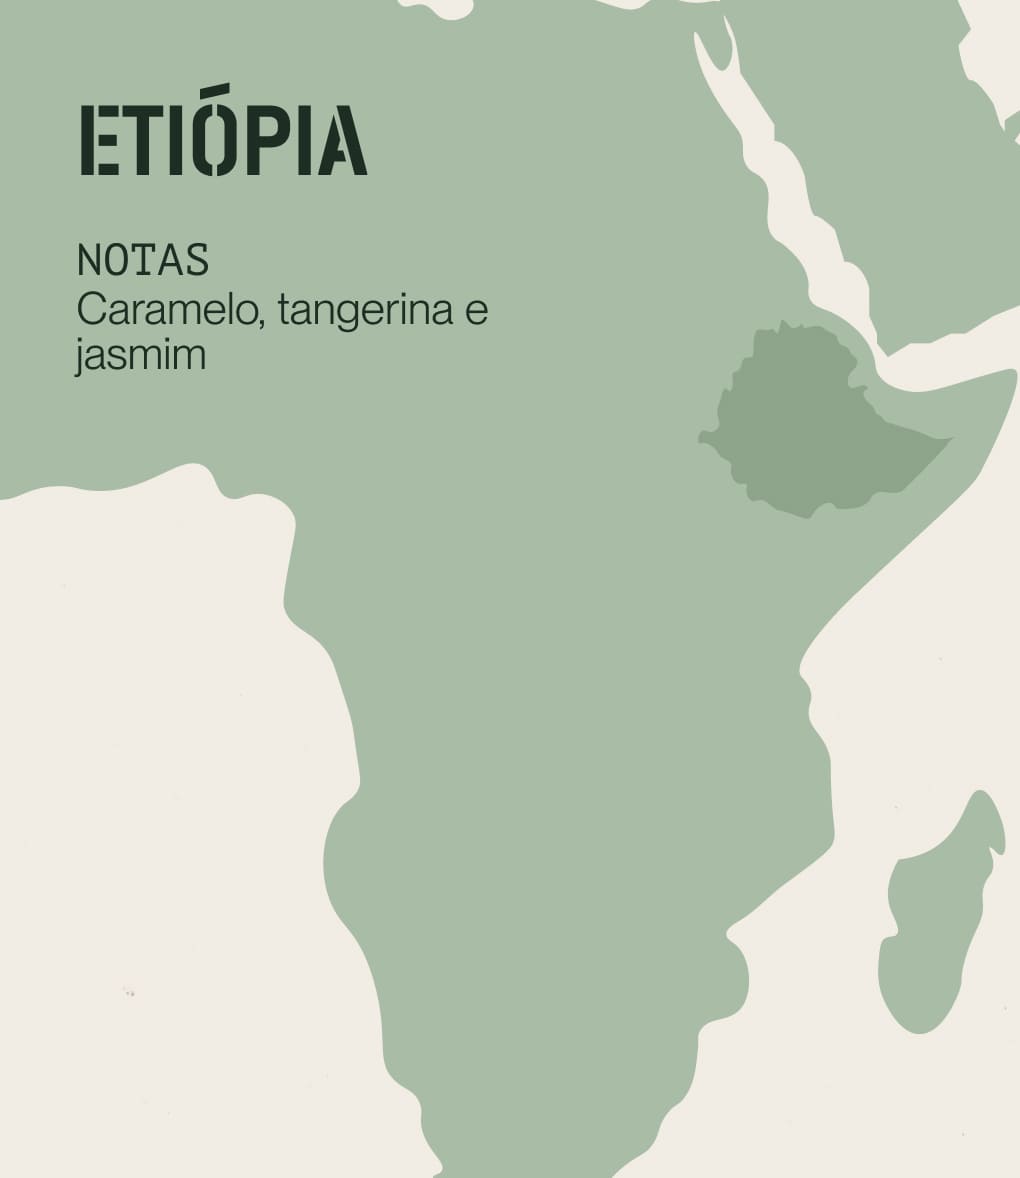 Notas de degustação de café de especialidade originário da Etiópia